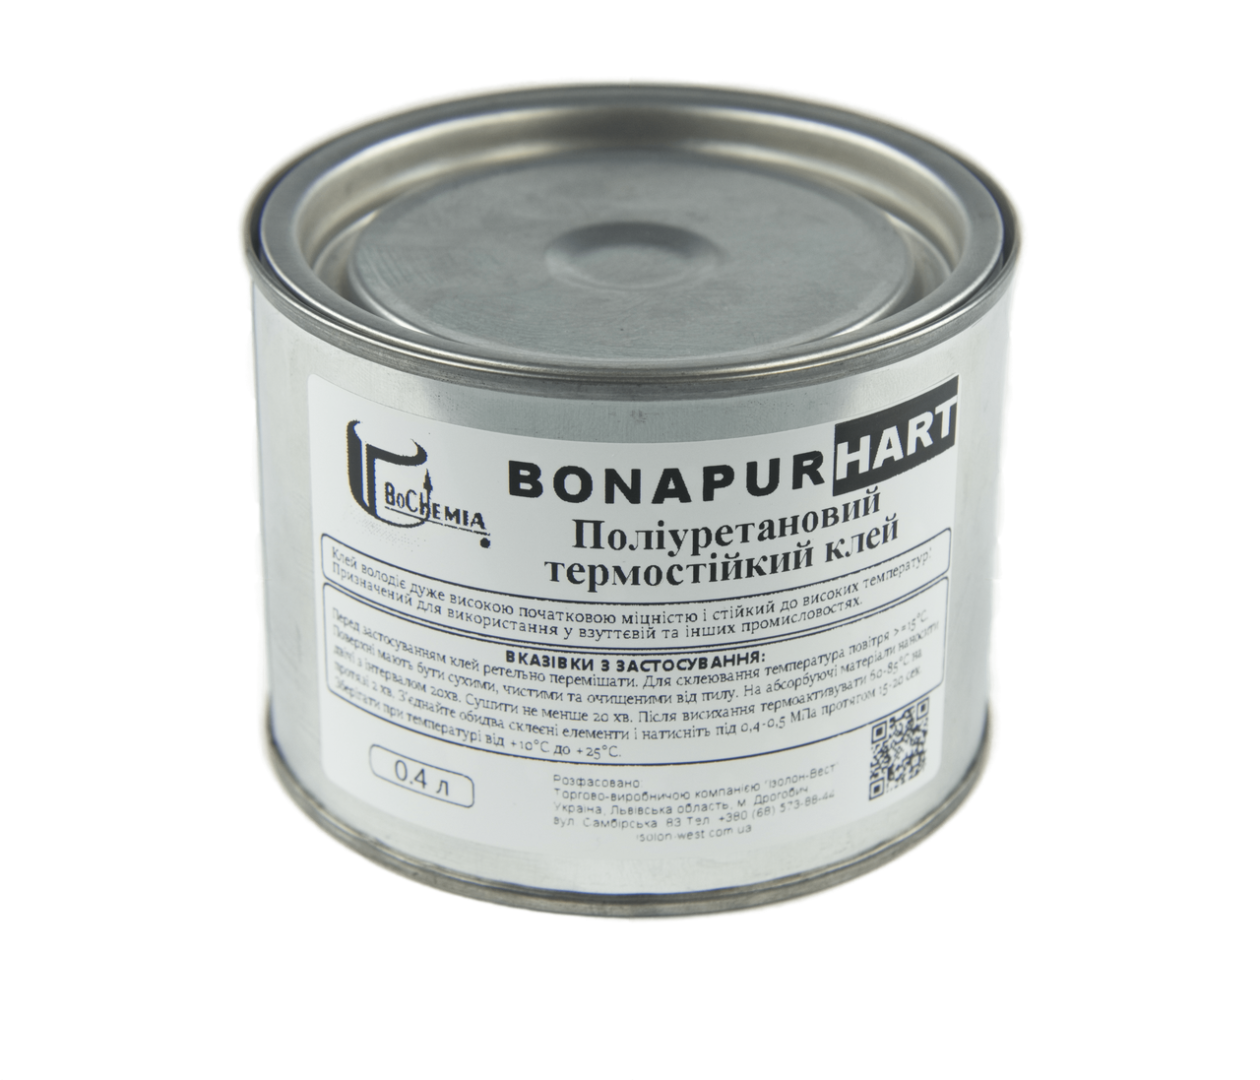 Полиуретановый термостойкий клей BONAPUR HART для кожзама, тканей, пвх, синтетической кожи, Польша детальная фотка